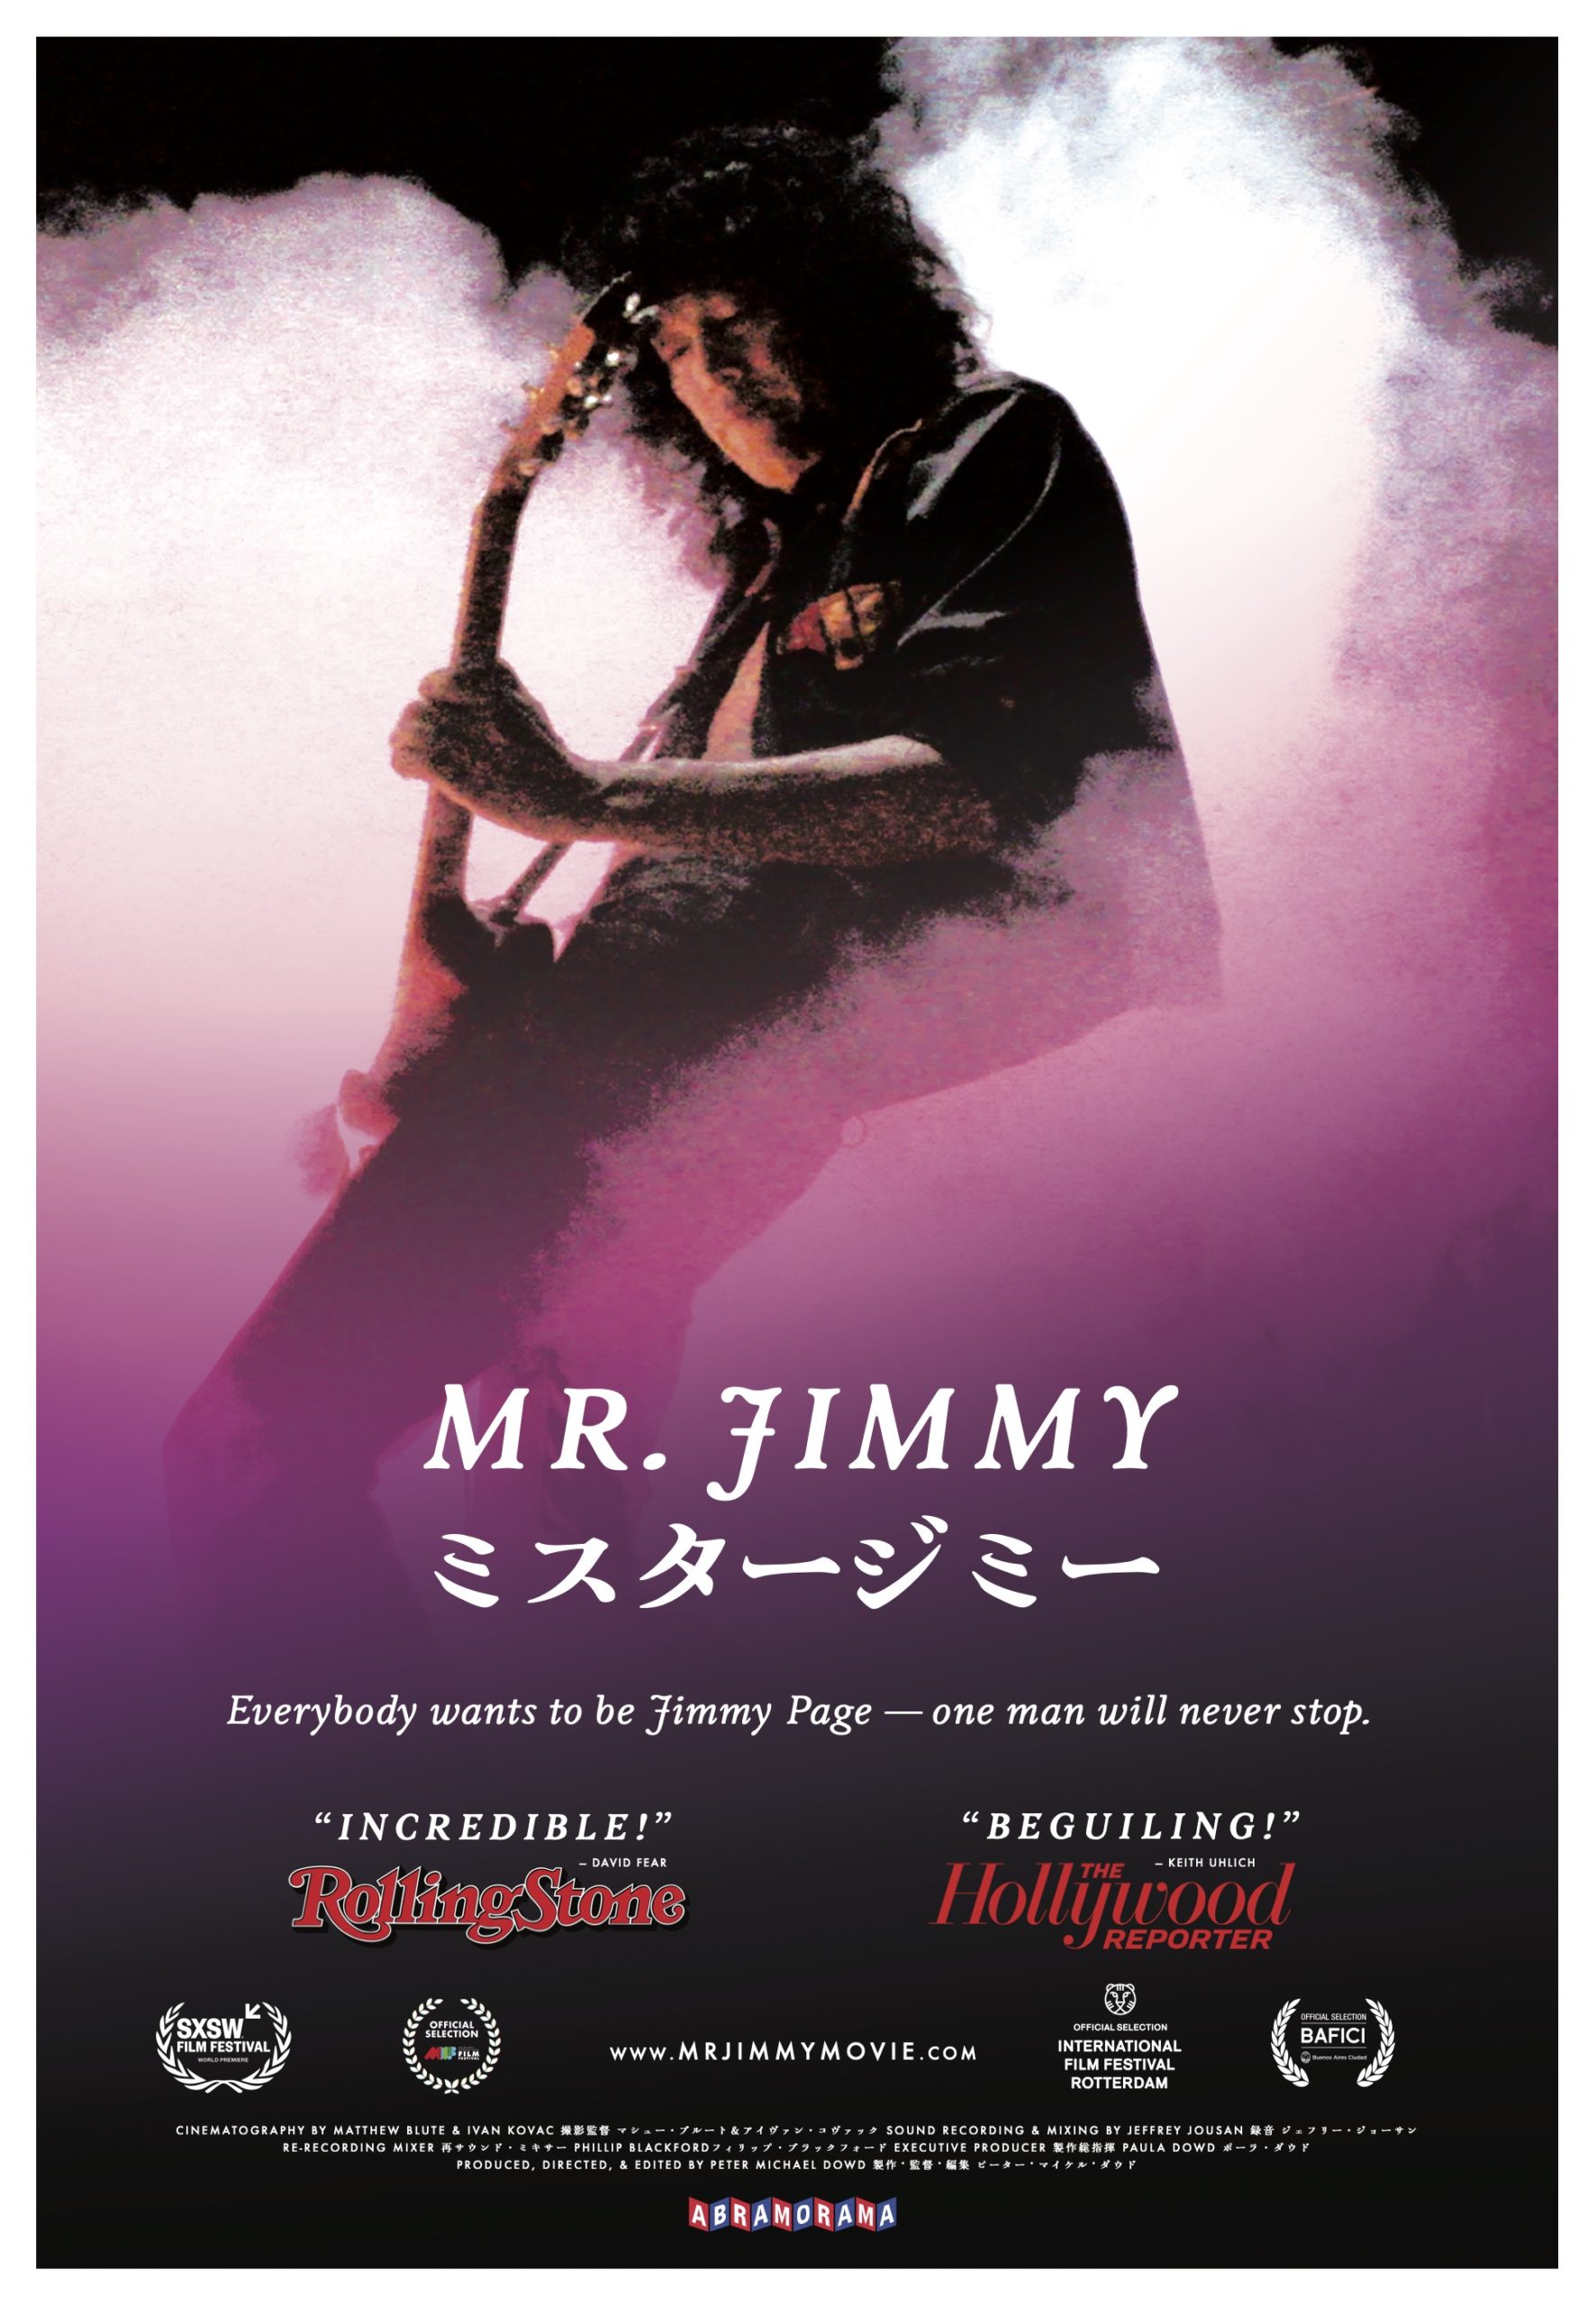 Mr. Jimmy Image